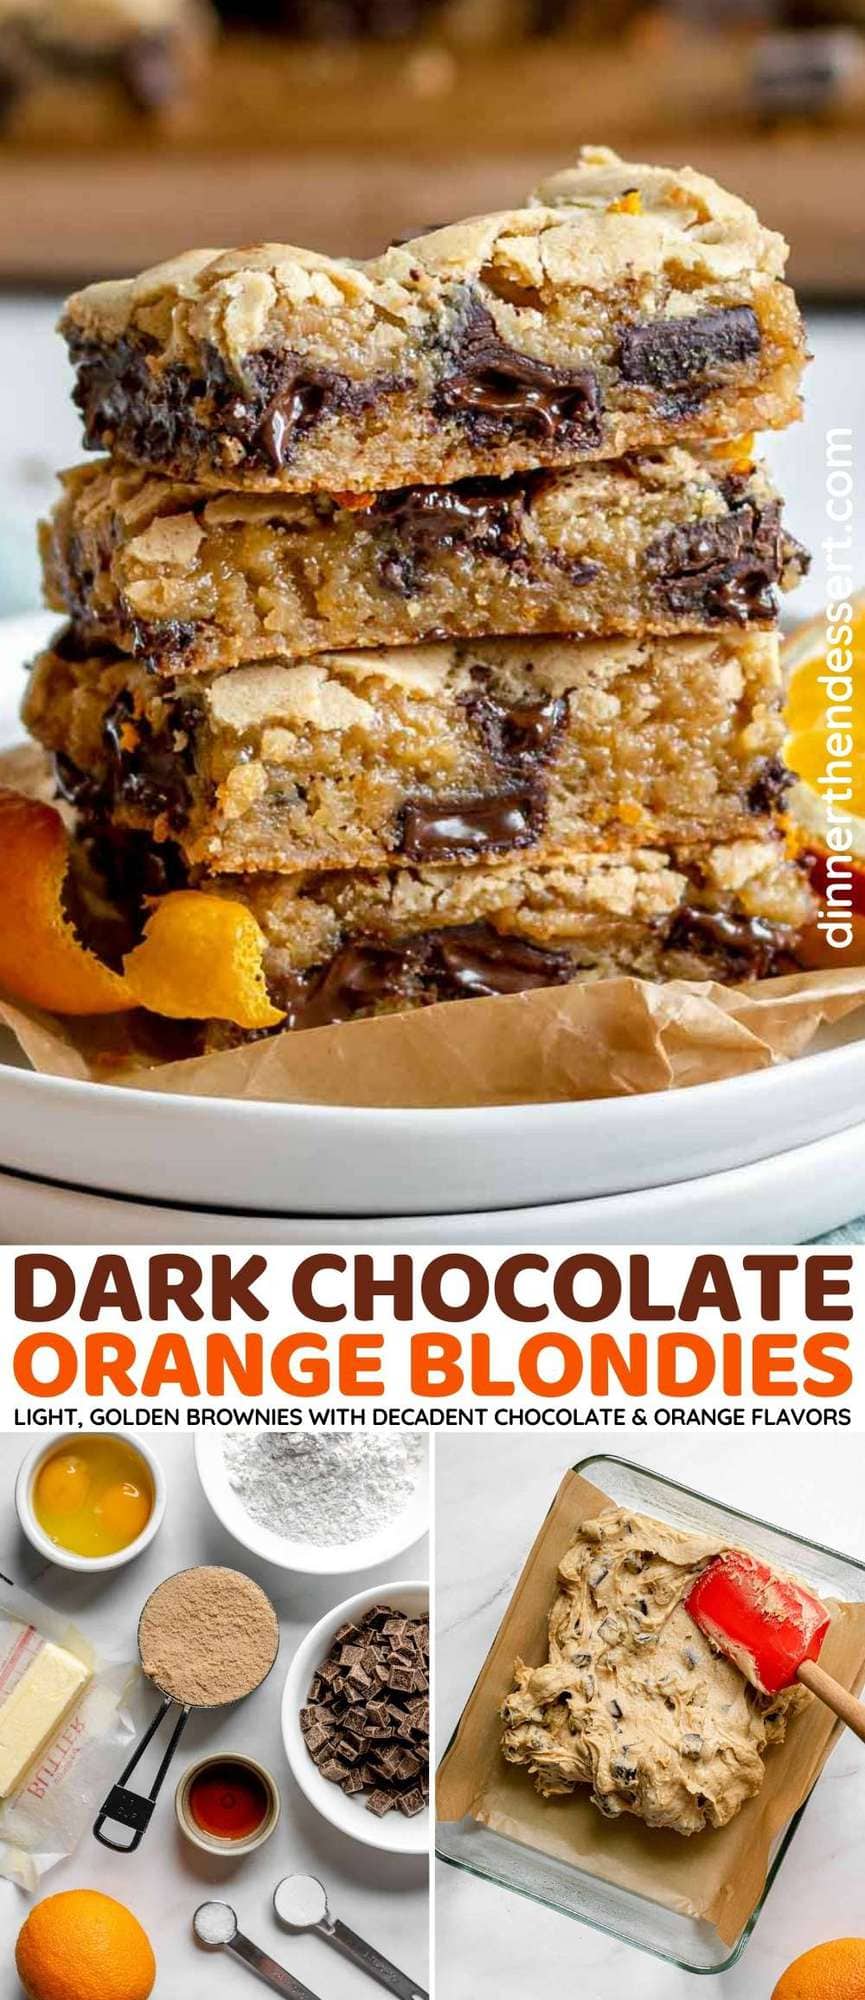 Dark Chocolate Orange Blondies collage